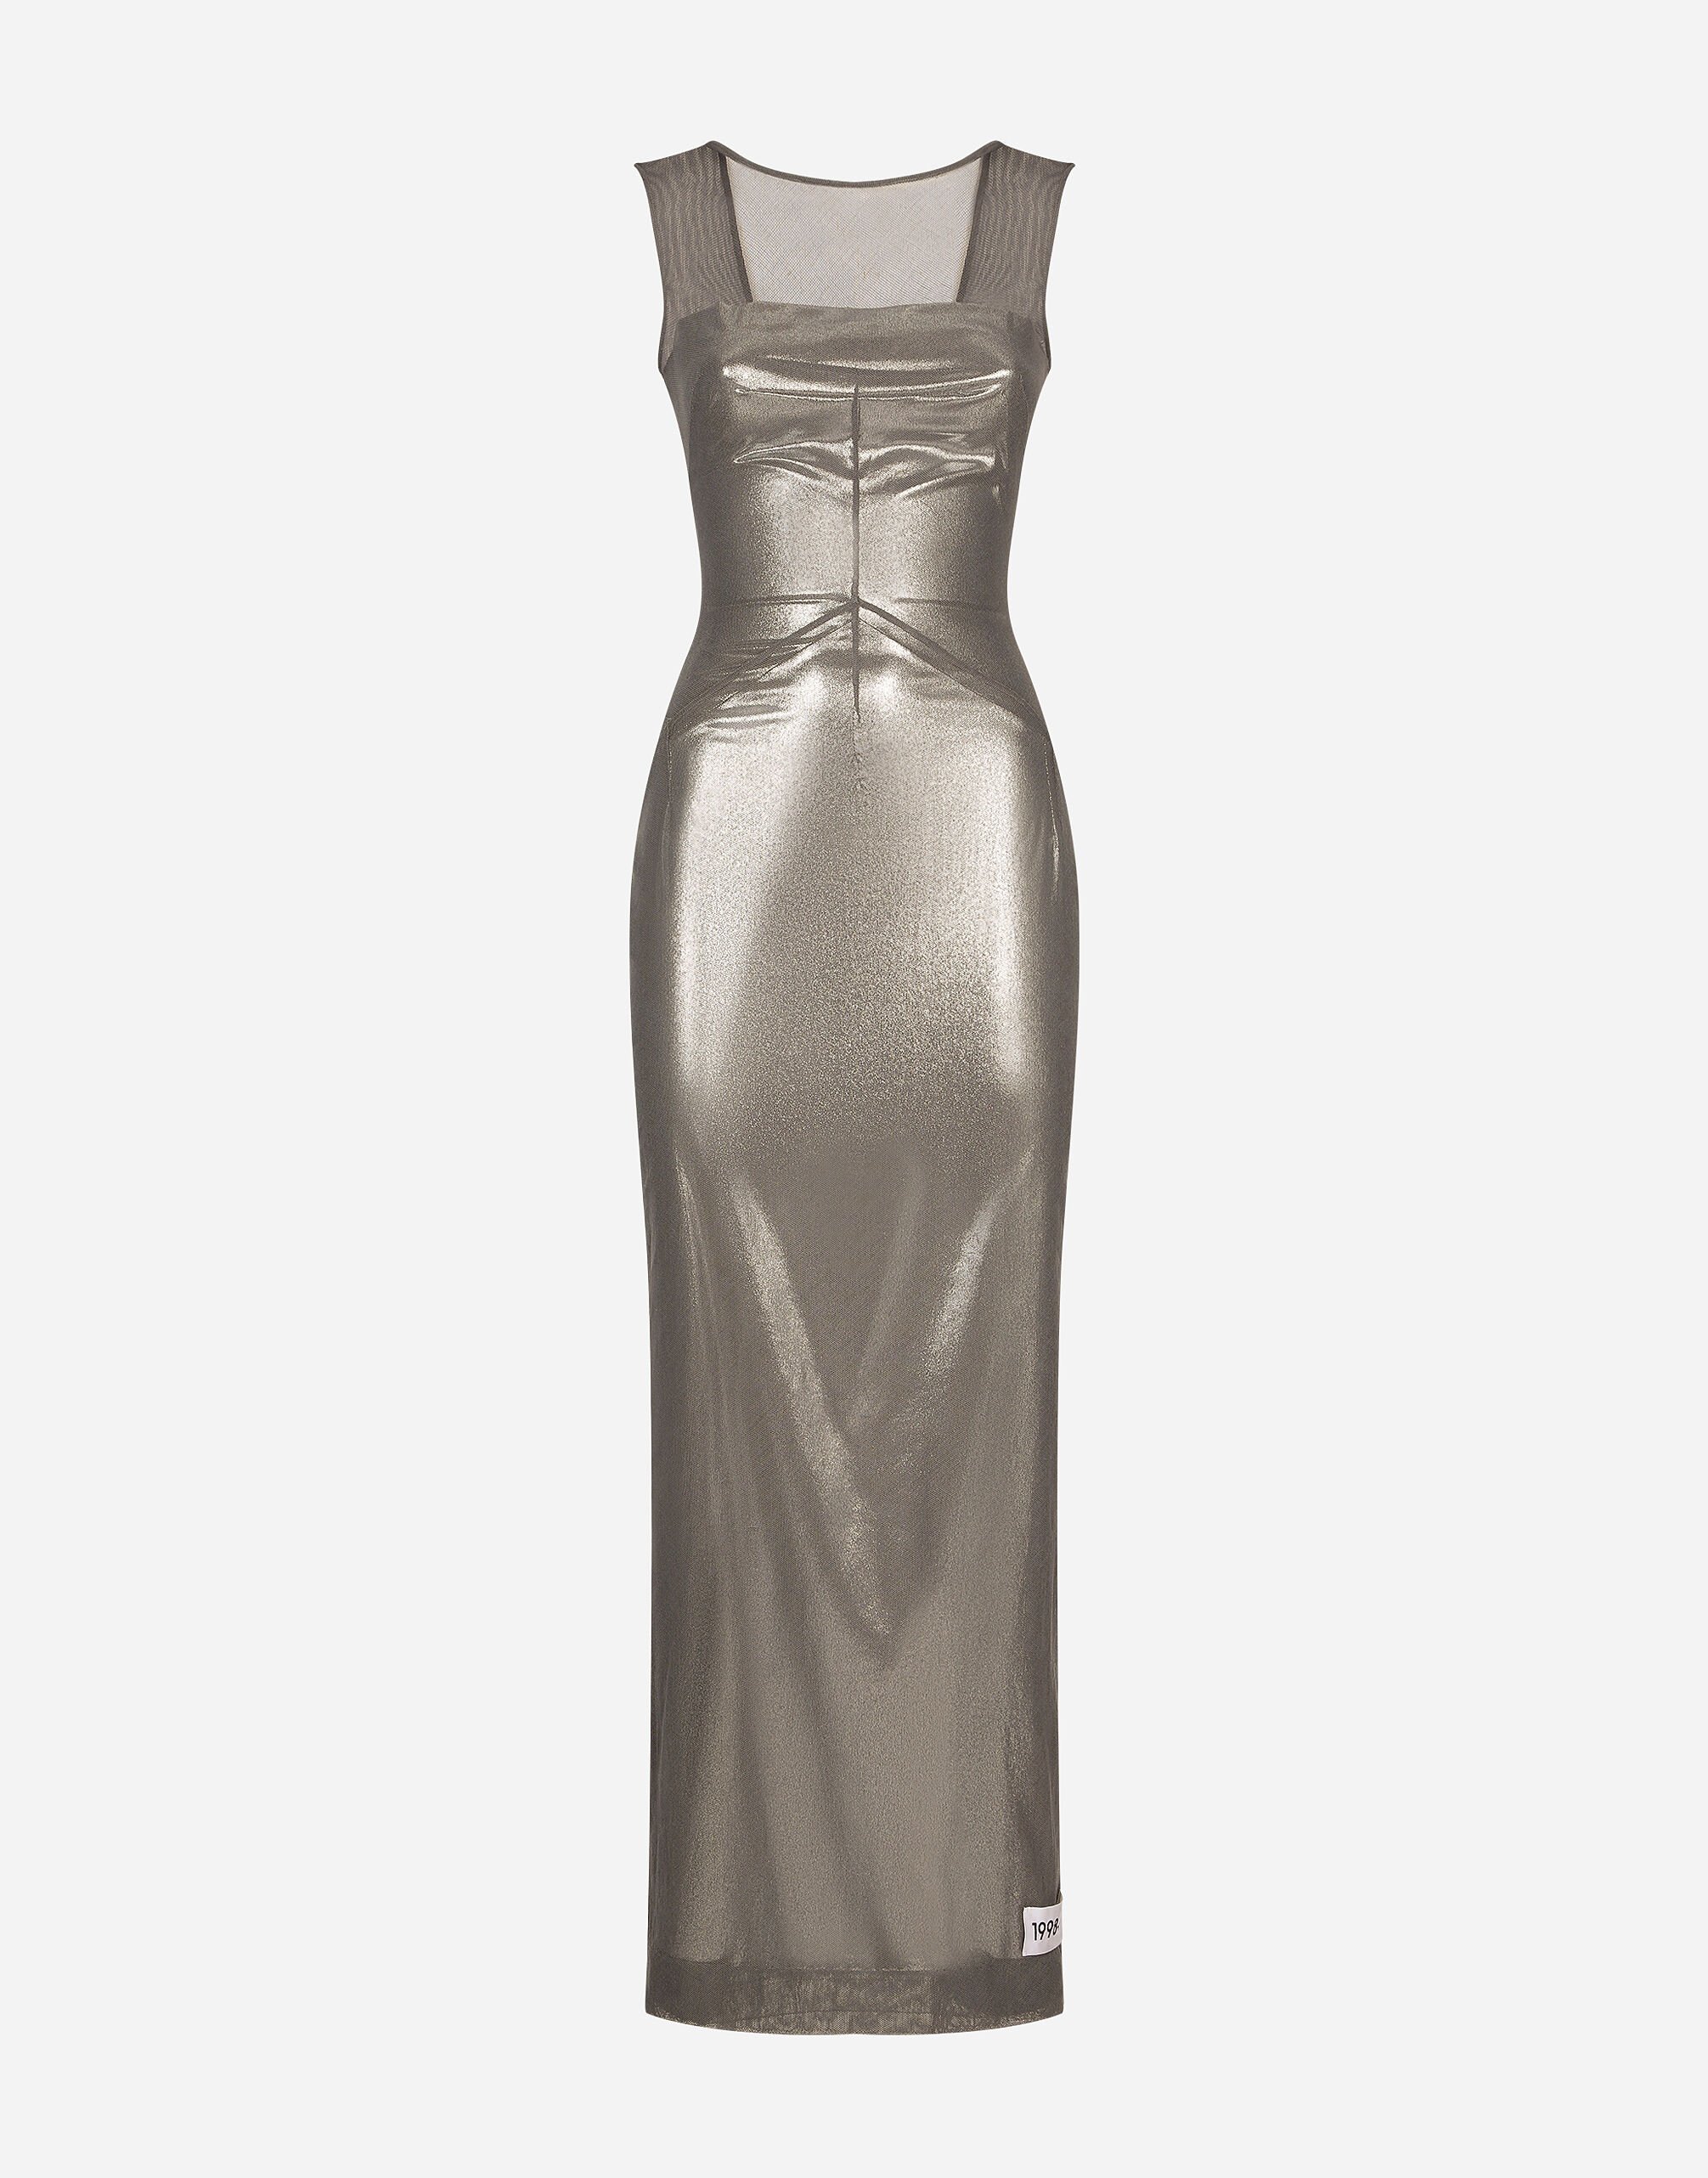 Dolce & Gabbana KIM DOLCE&GABBANA 层压平纹针织与薄纱长款连衣裙 黑 VG6187VN187